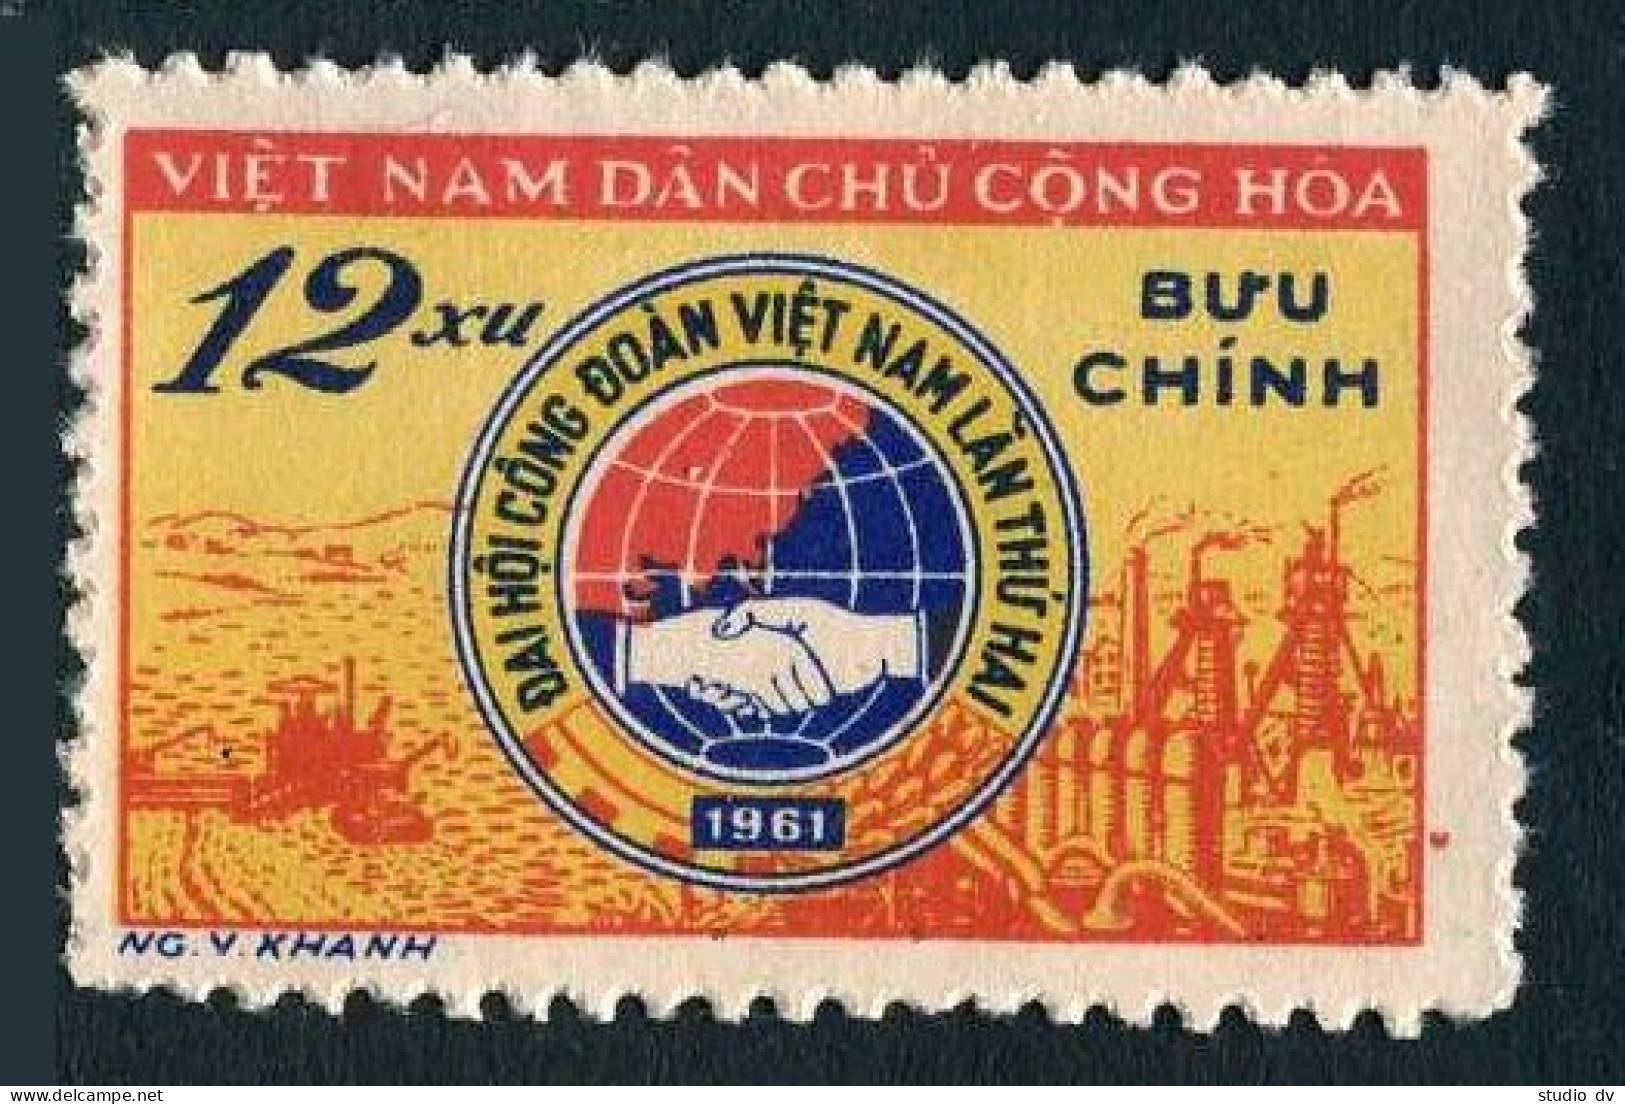 Viet Nam 145,MNH.Michel 151. Trade Unions,2nd National Congress.1961. - Viêt-Nam